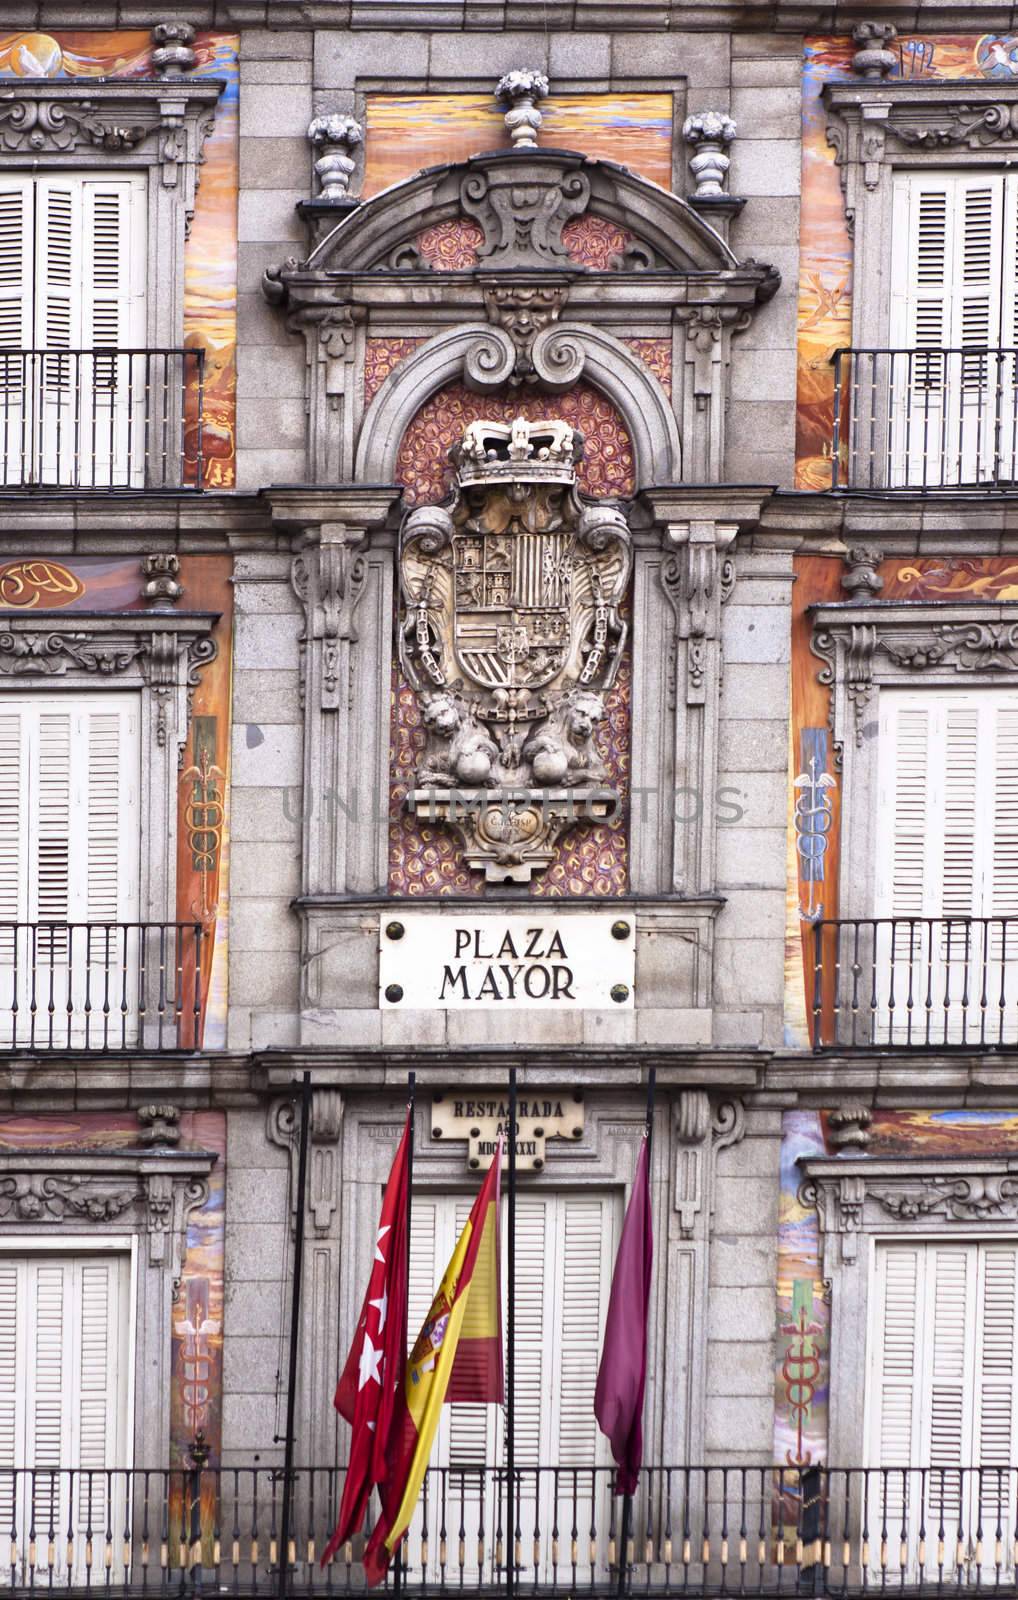 Casa de la Panaderia, Plaza Mayor, Madrid, Spain